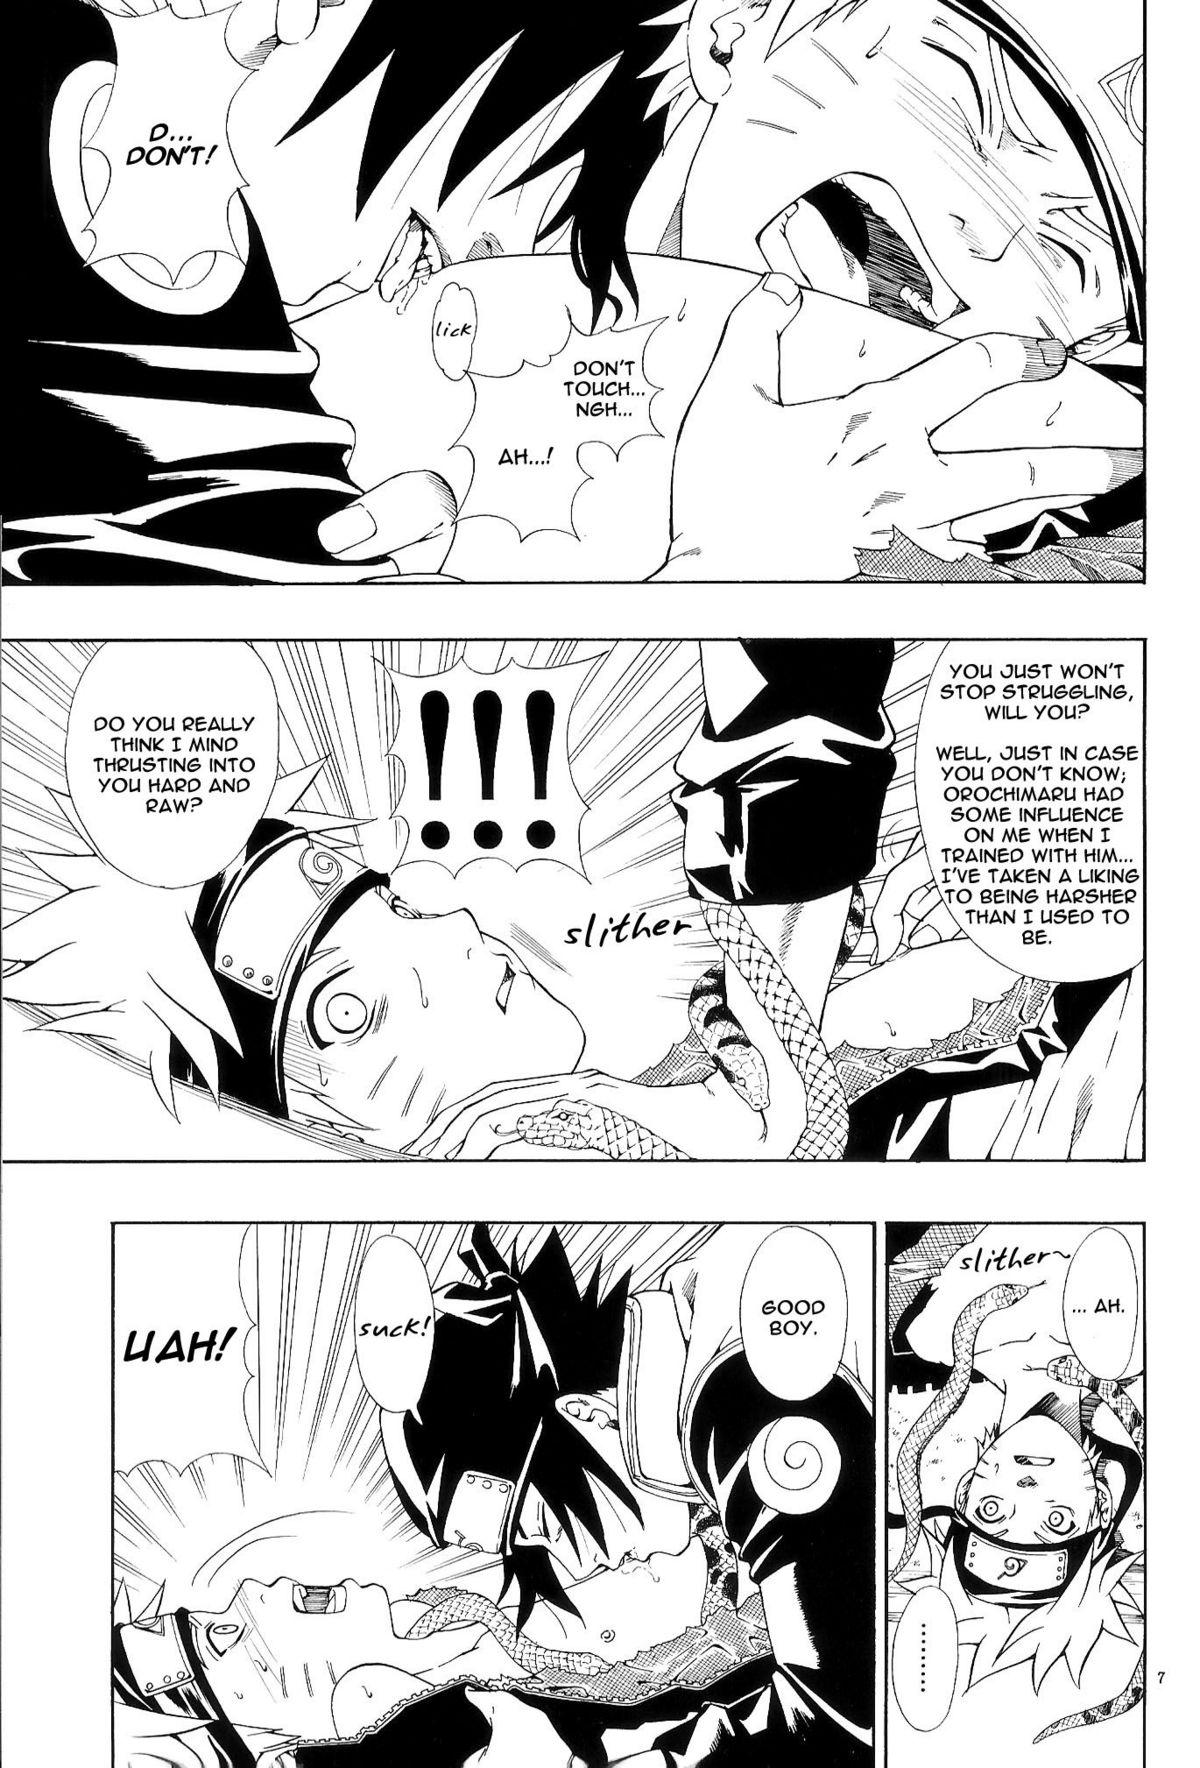 Sex Toy ERO ERO²: Volume 1.5 (NARUTO) [Sasuke X Naruto] YAOI -ENG- - Naruto Arrecha - Page 6